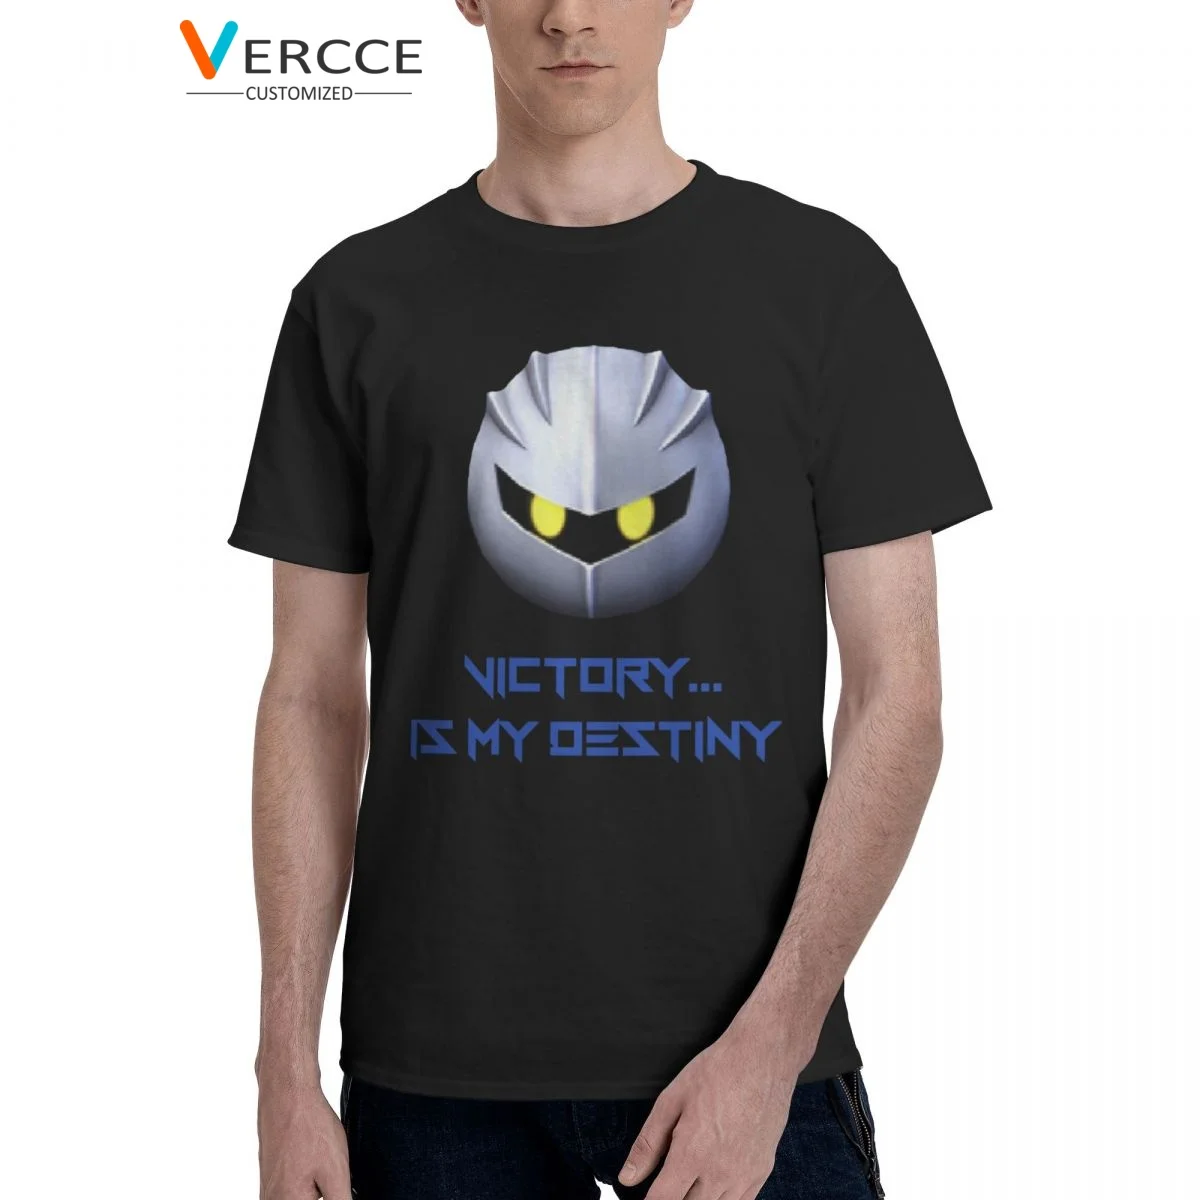 

Футболка Kirbys с надписью «Game Victory Is My Destiny», футболки из 100% хлопка, одежда с короткими рукавами, мужская и женская футболка, уникальная идея для подарка